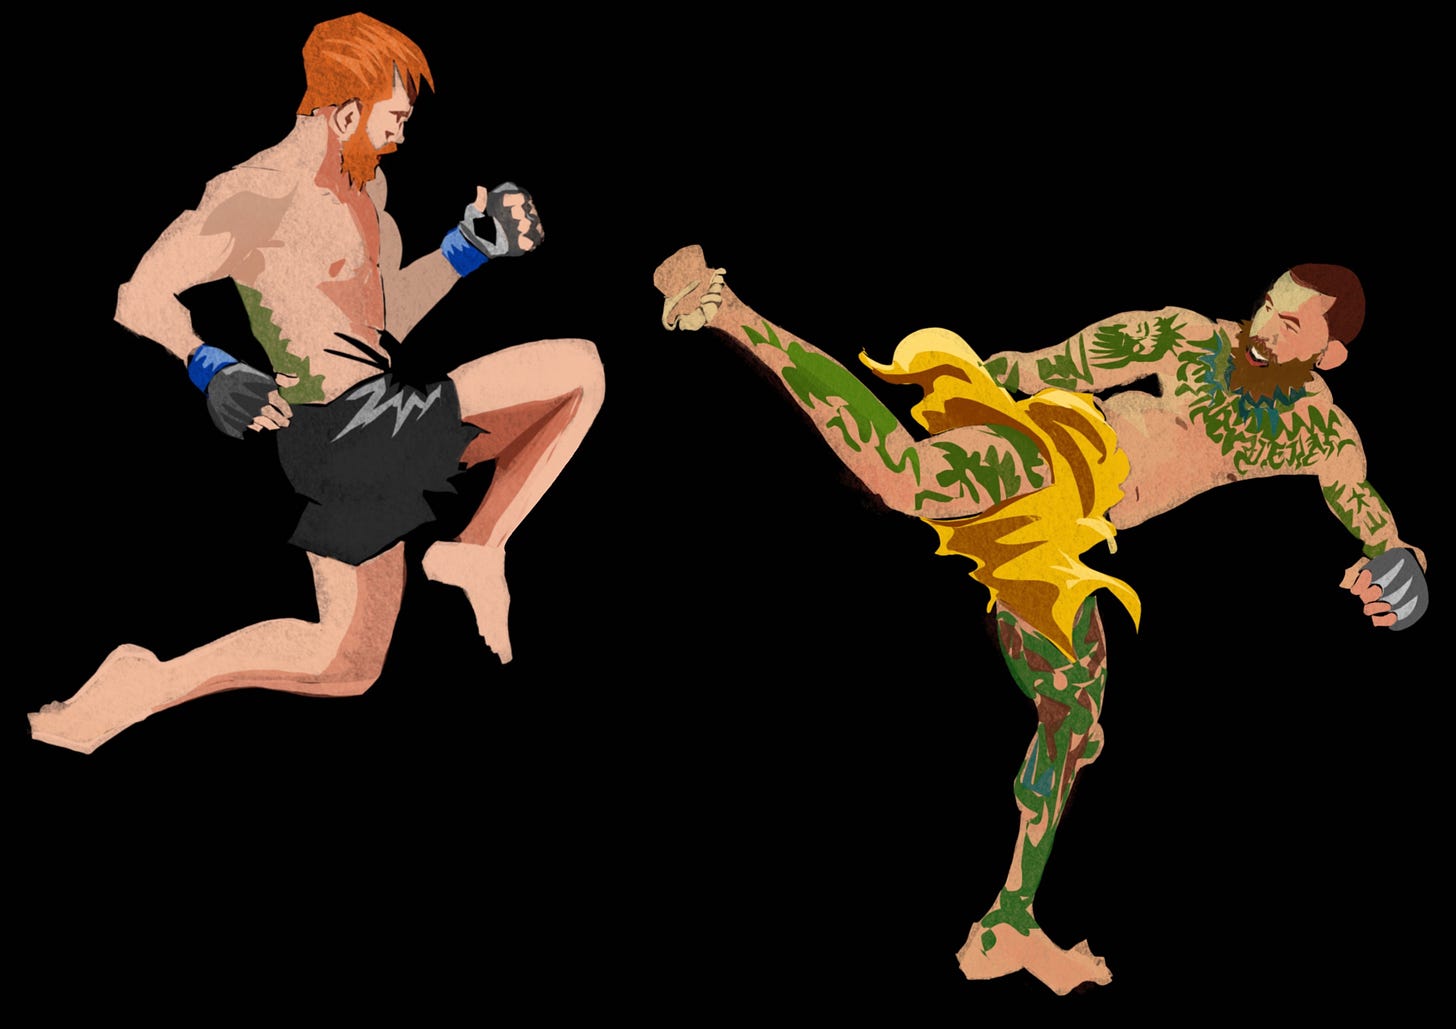 Illustration of Cory Sandhagen vs. Marlon Vera.